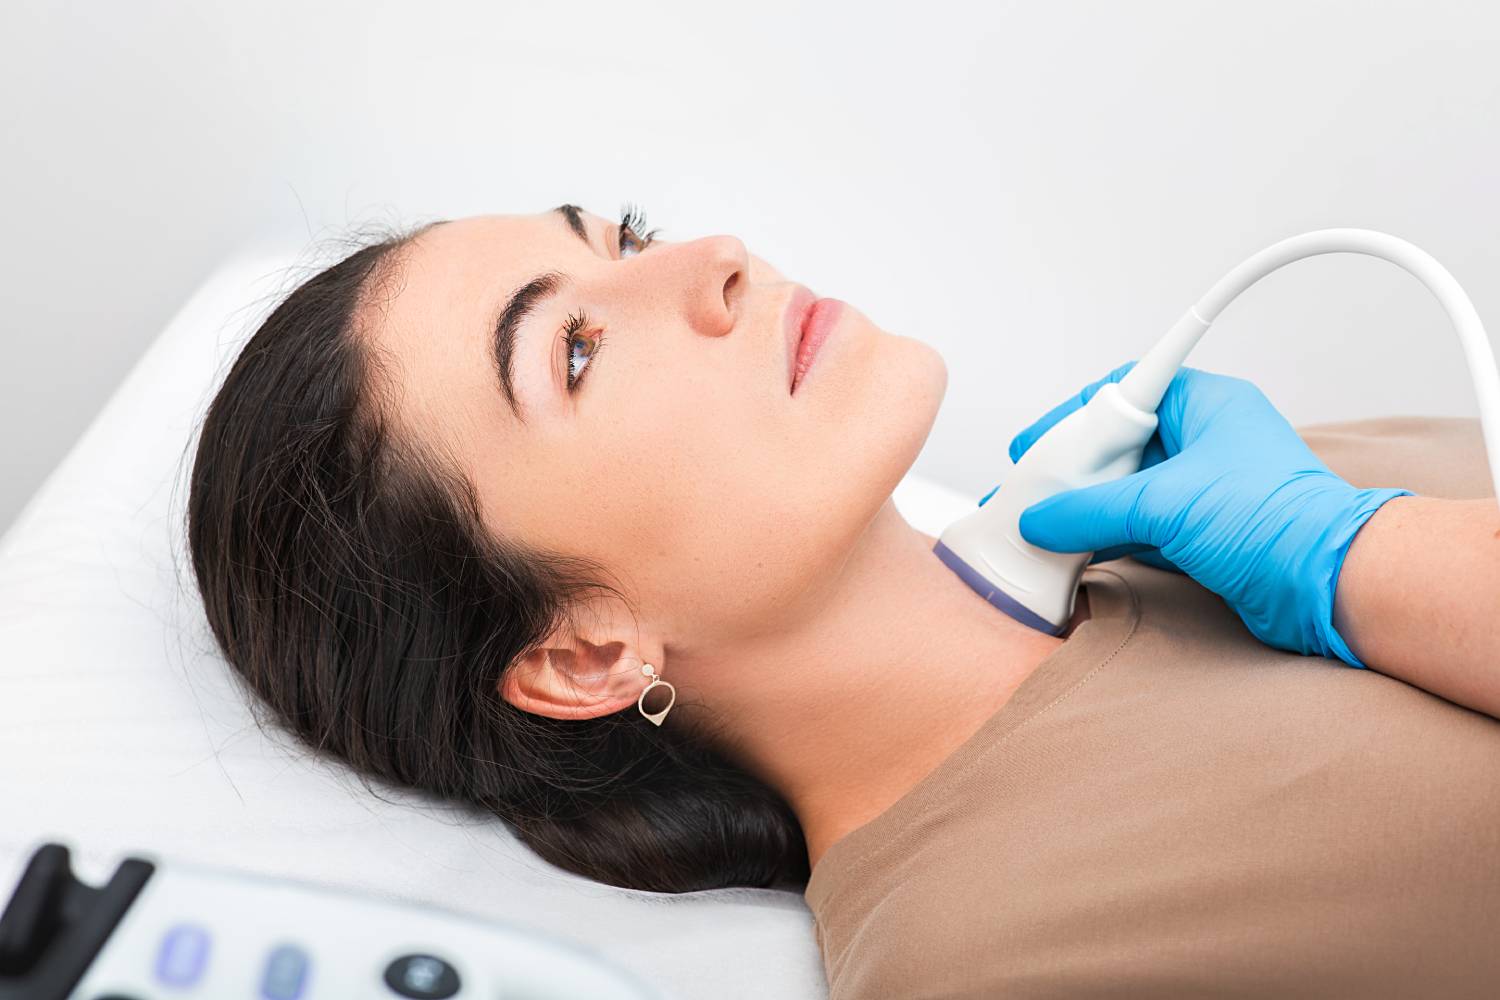 Woman patient receives thyroid diagnostics